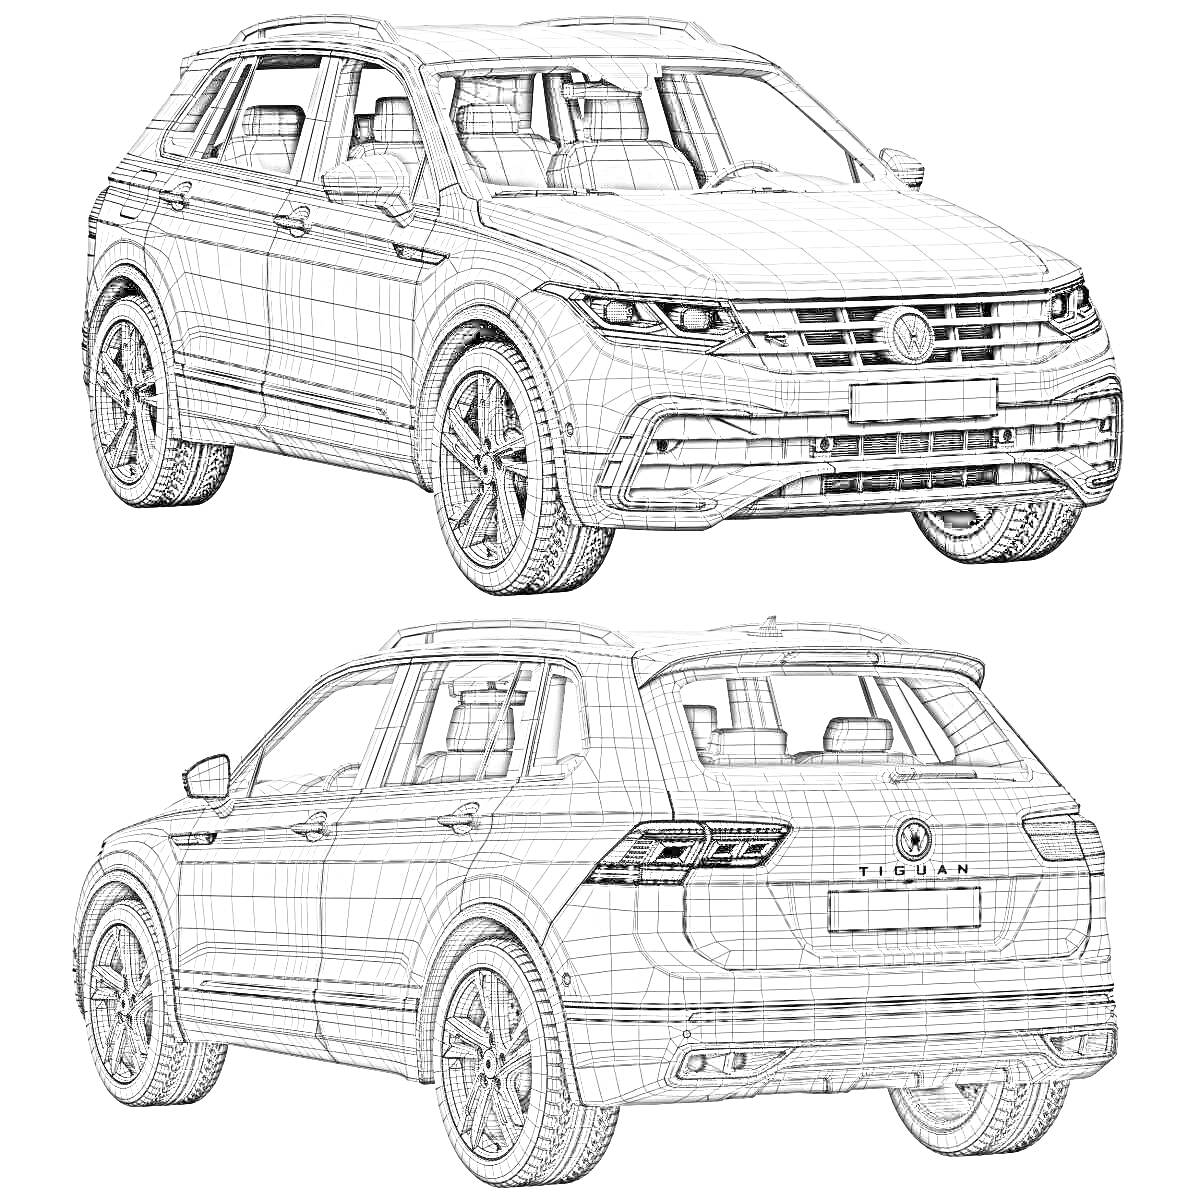 Раскраска Контурный рисунок автомобиля Volkswagen Tiguan, вид спереди и сзади